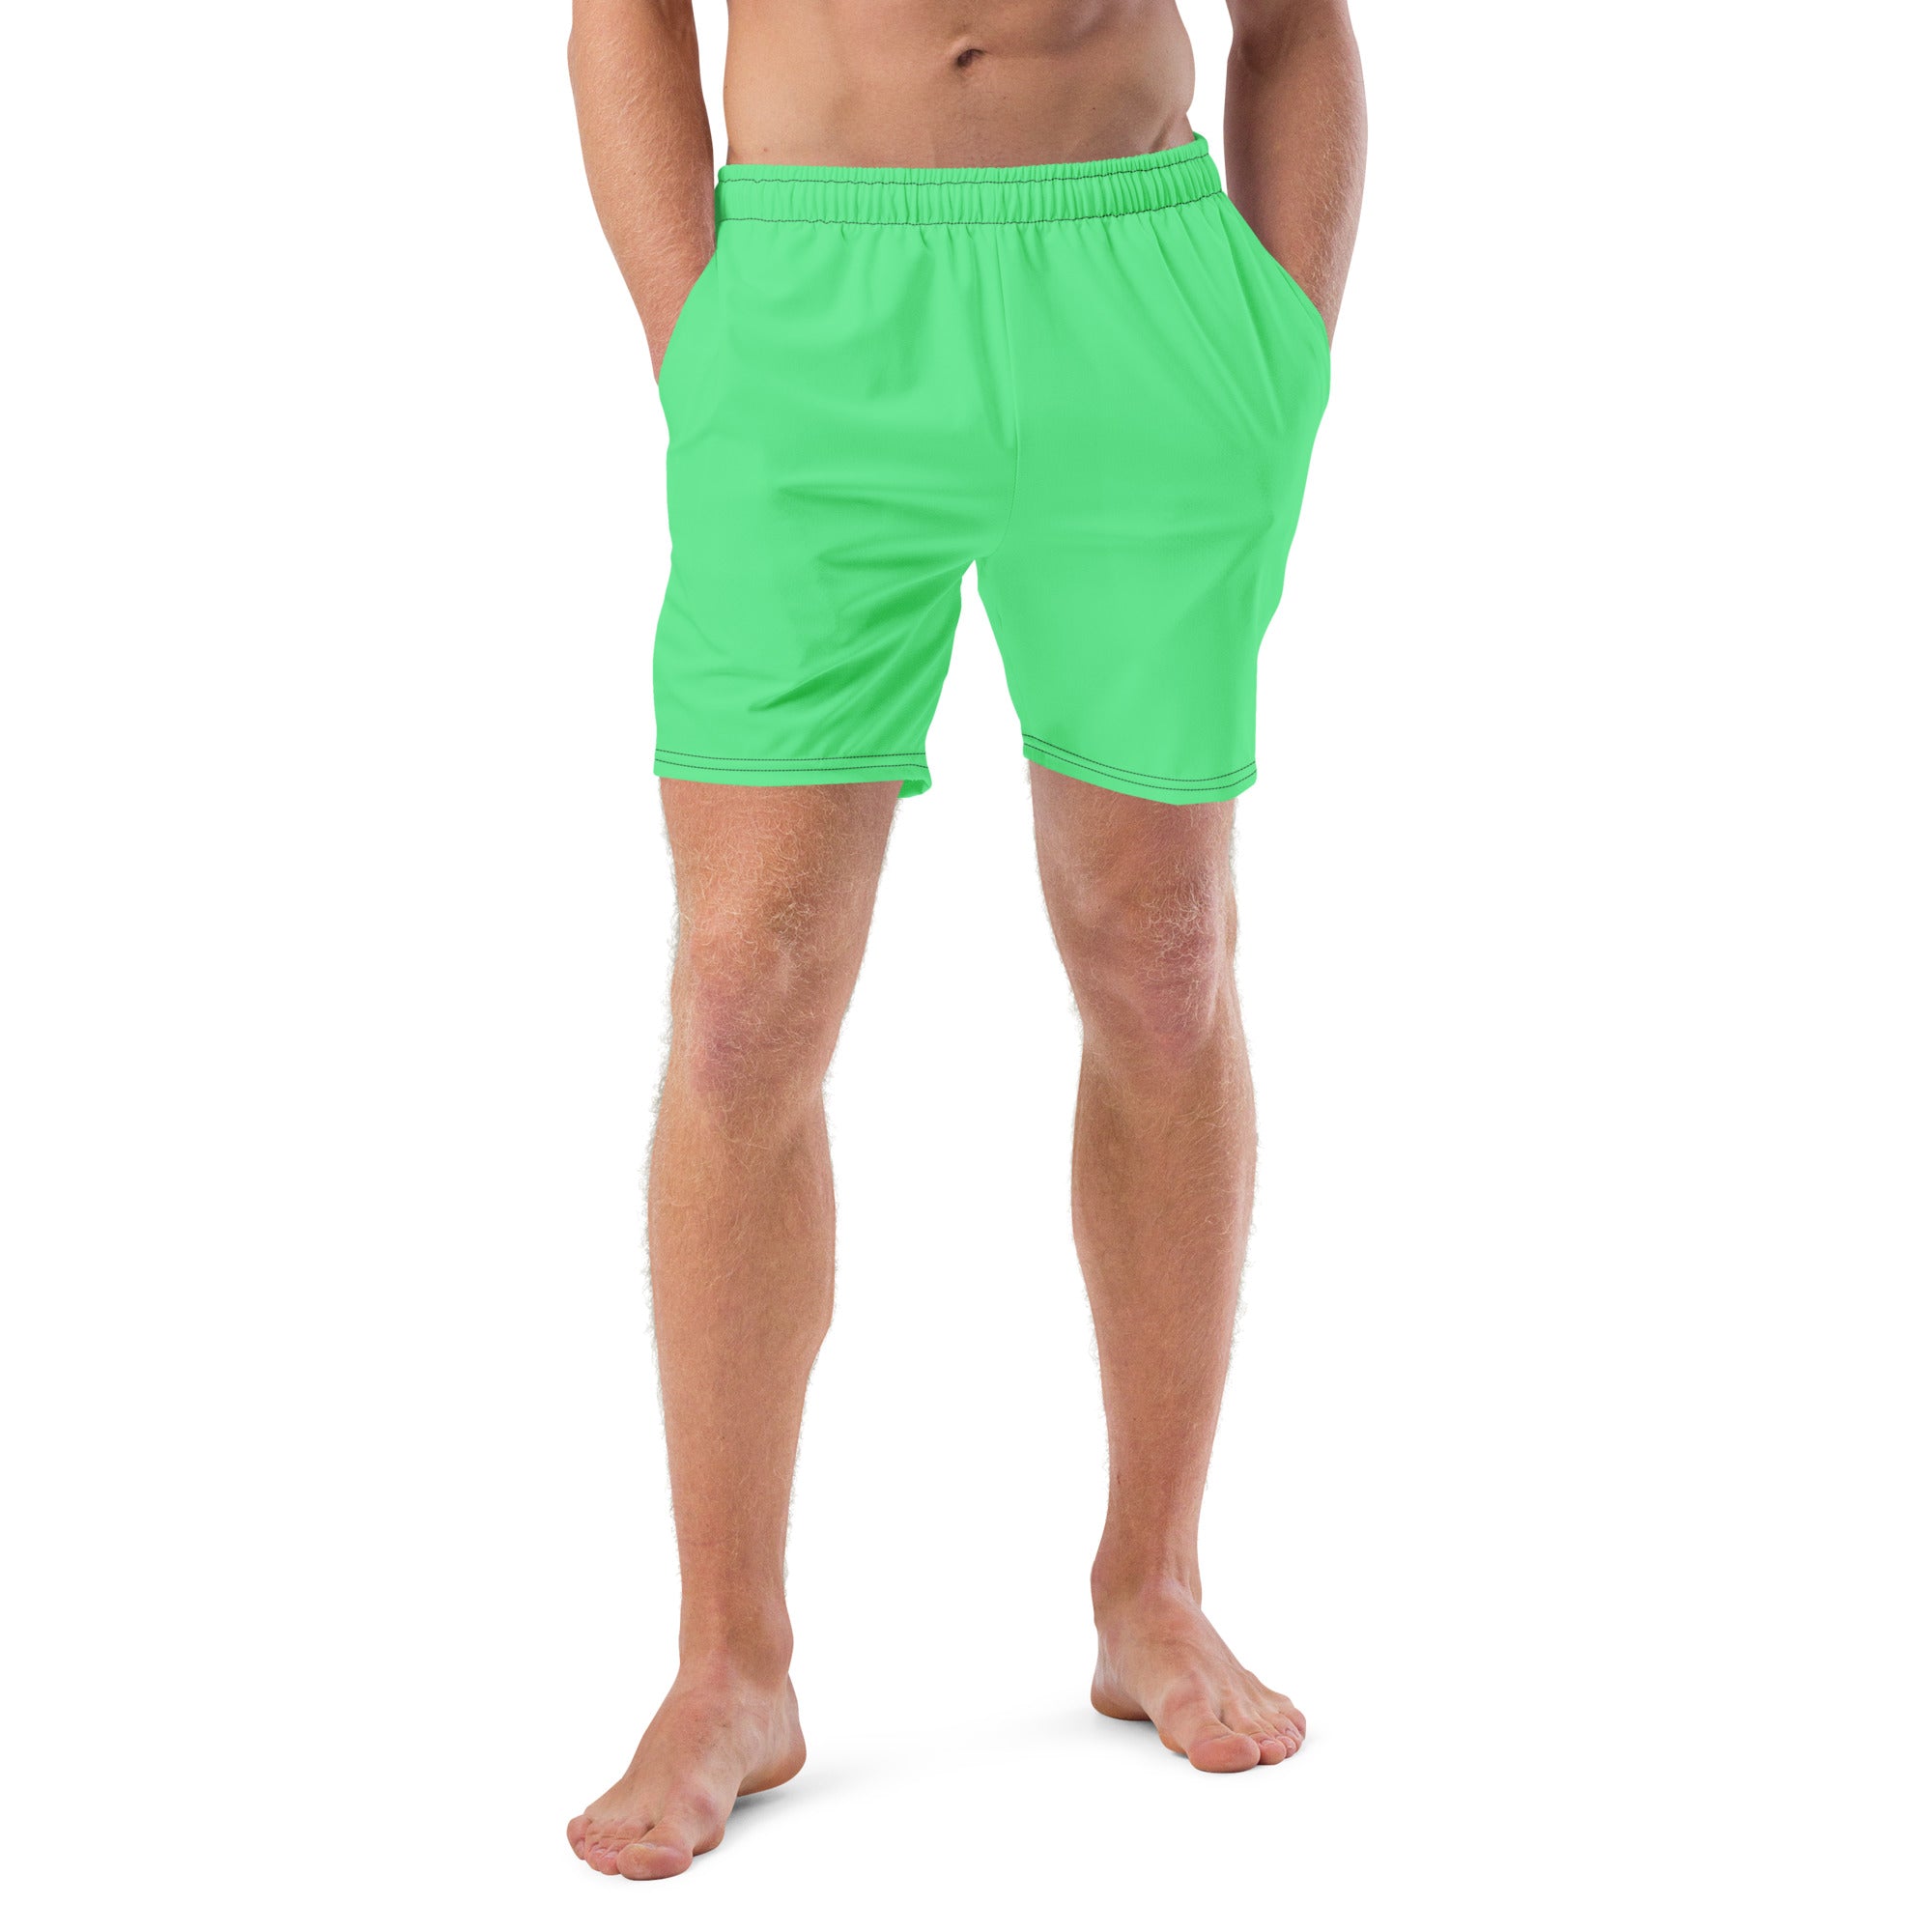 'Mint Green' men's swim trunks